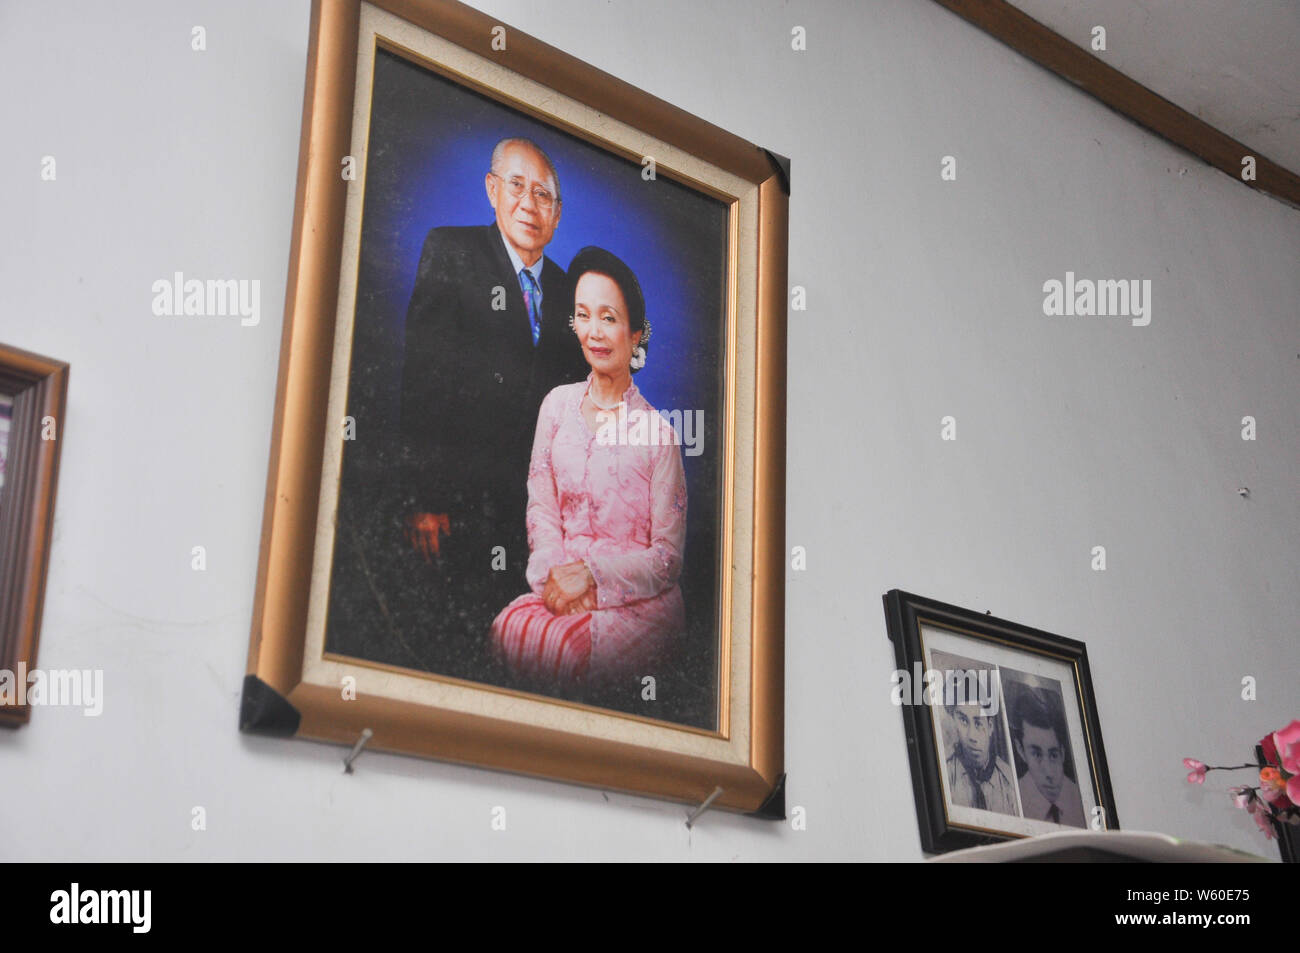 Photographie d'Andarias Sarra, 80, et 73, Nony Dortje, accroché au mur. La photo a été prise pour célébrer leur 50e anniversaire de mariage en 2009. Banque D'Images